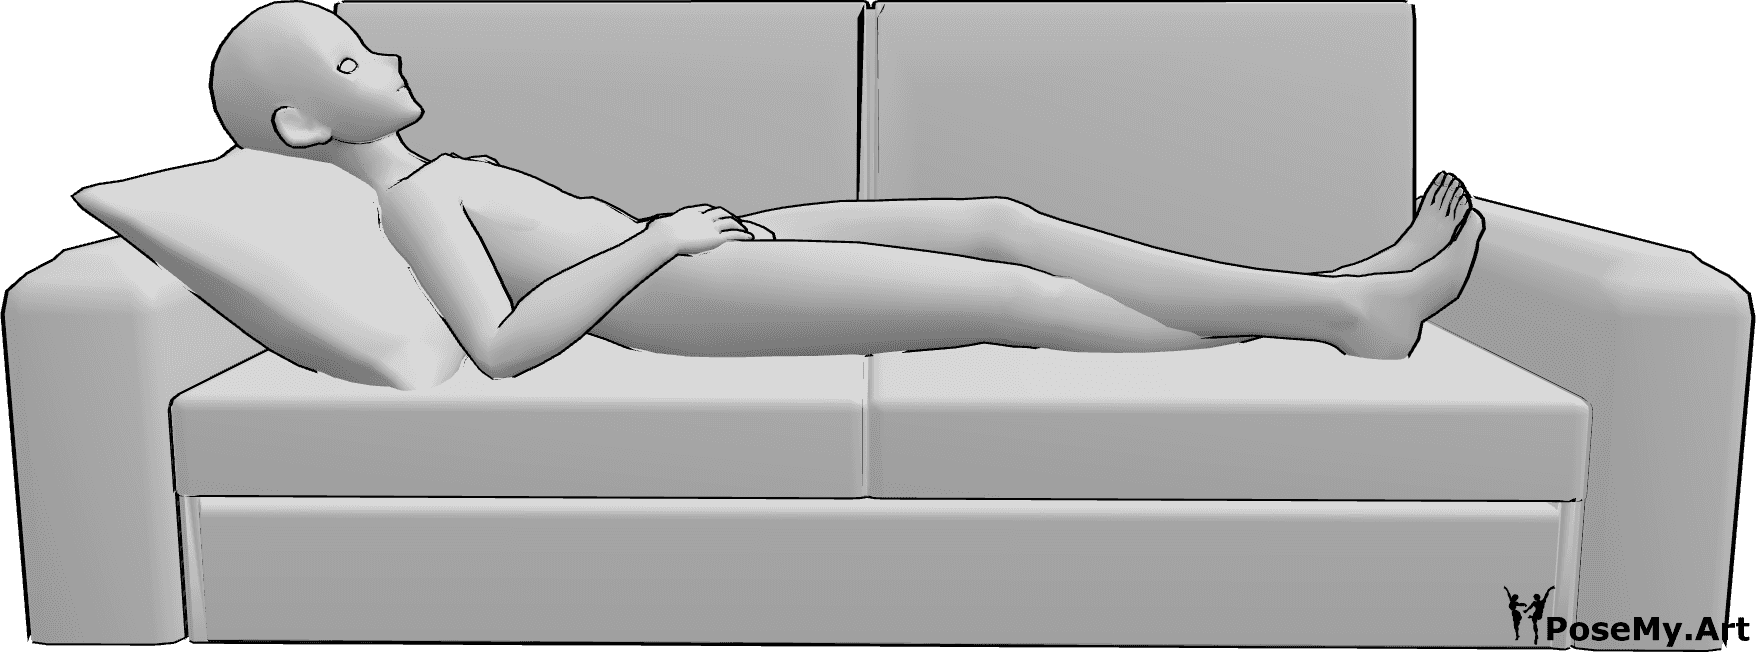 Referência de poses- Pose deitado de anime masculino - O macho Anime está deitado confortavelmente no sofá com as pernas cruzadas e a olhar para cima